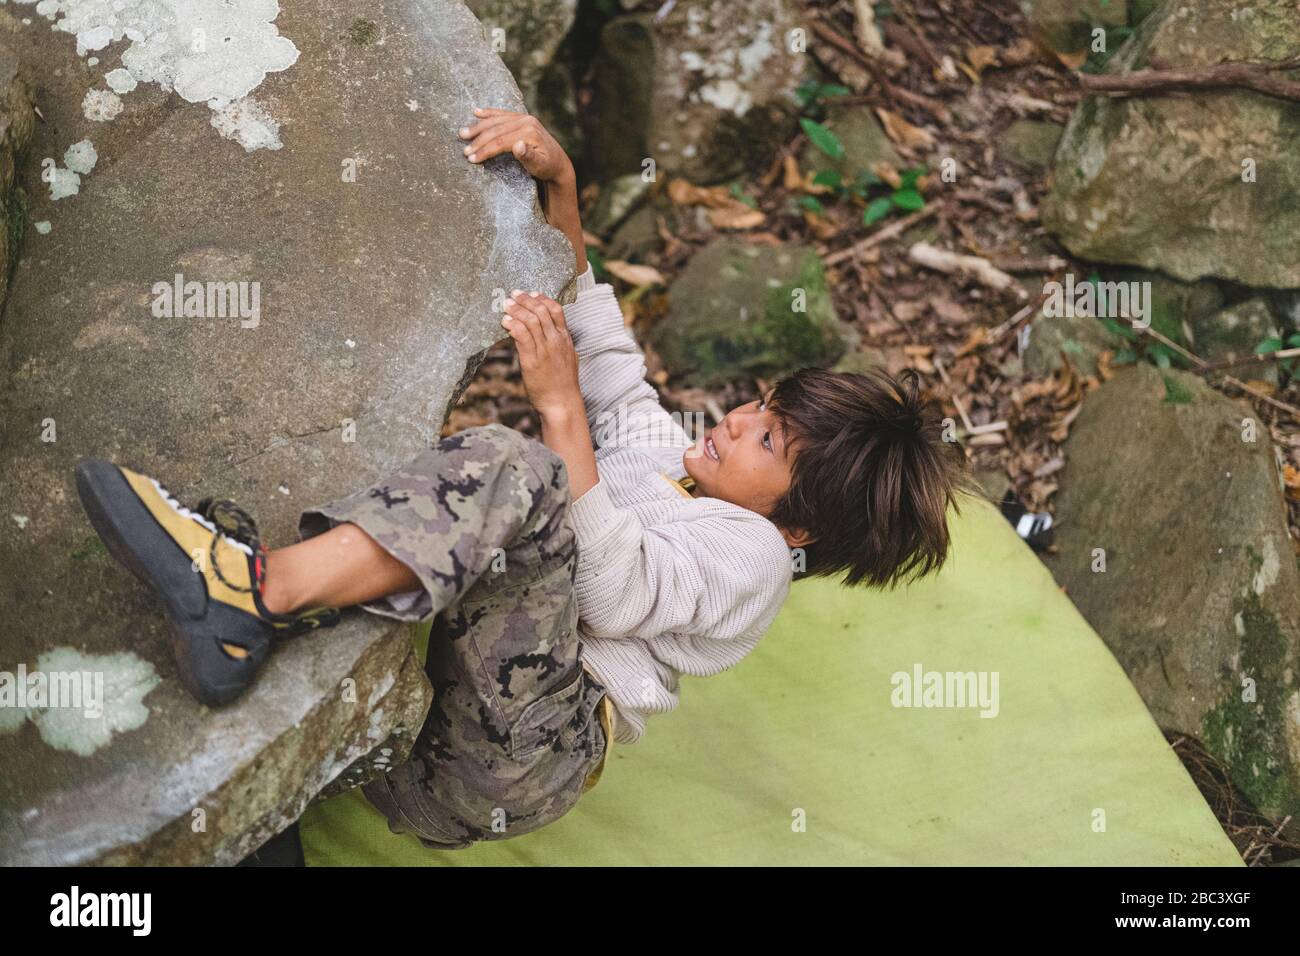 Little boy climbing a rock outdoors Stock Photo